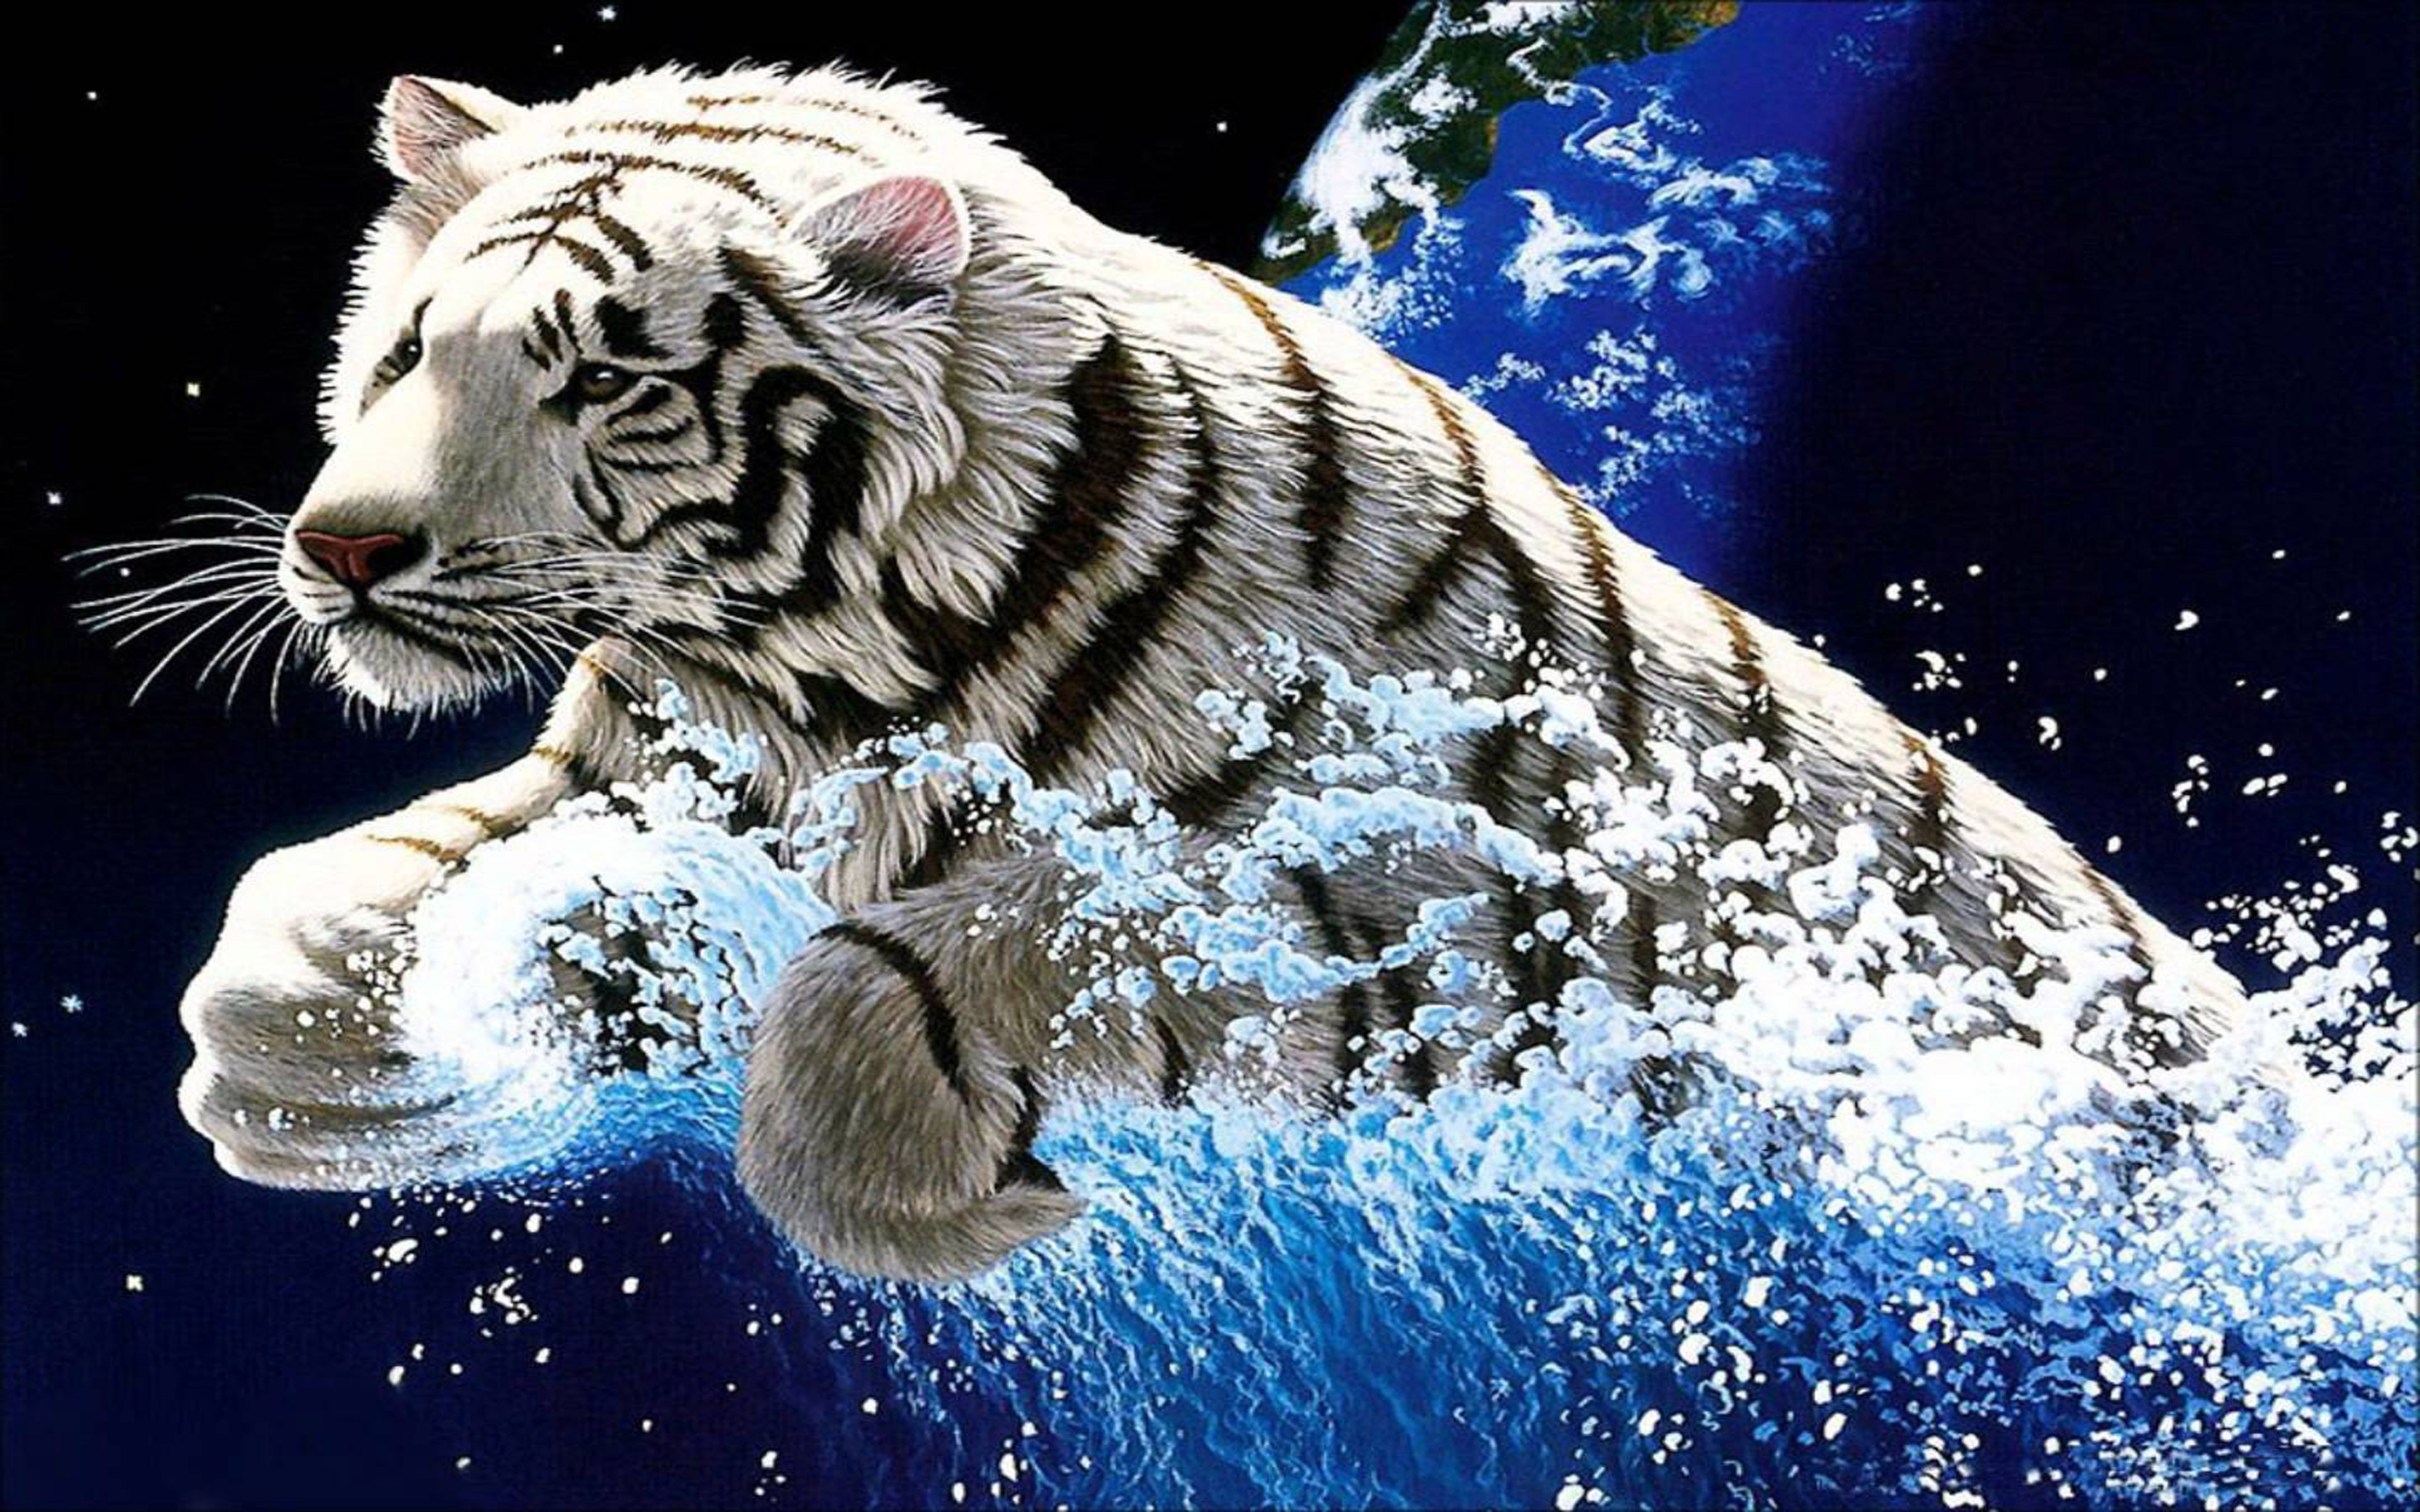 Движущиеся обои на заставку. Новый 2022 год чёрного водяного тигра. Тигр на рабочий стол. Тигр новый год 2022. Новогодний тигр.